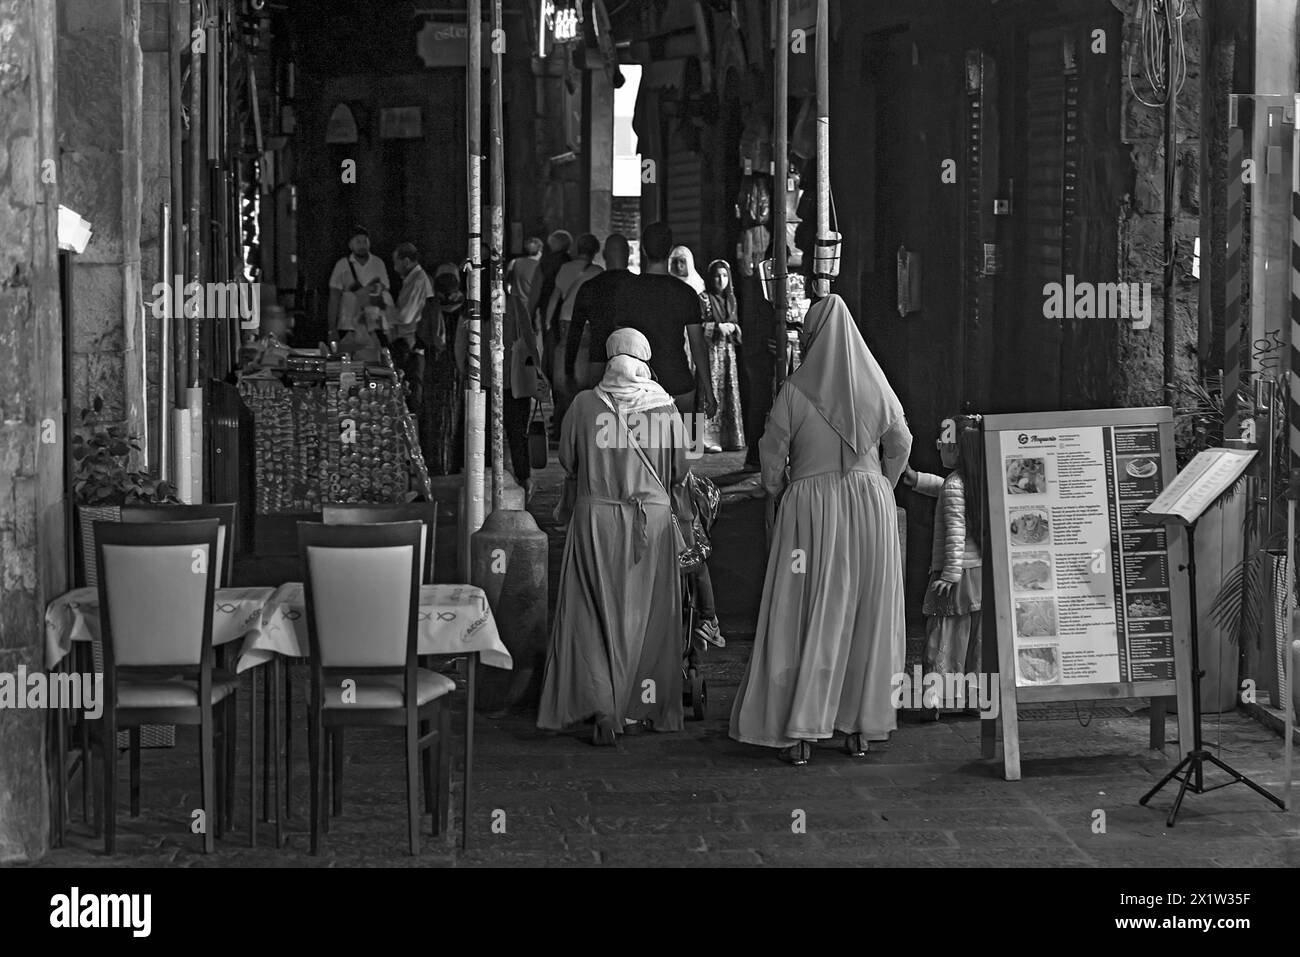 Donne con vesti nei portici storici del porto, Genova, Italia Foto Stock